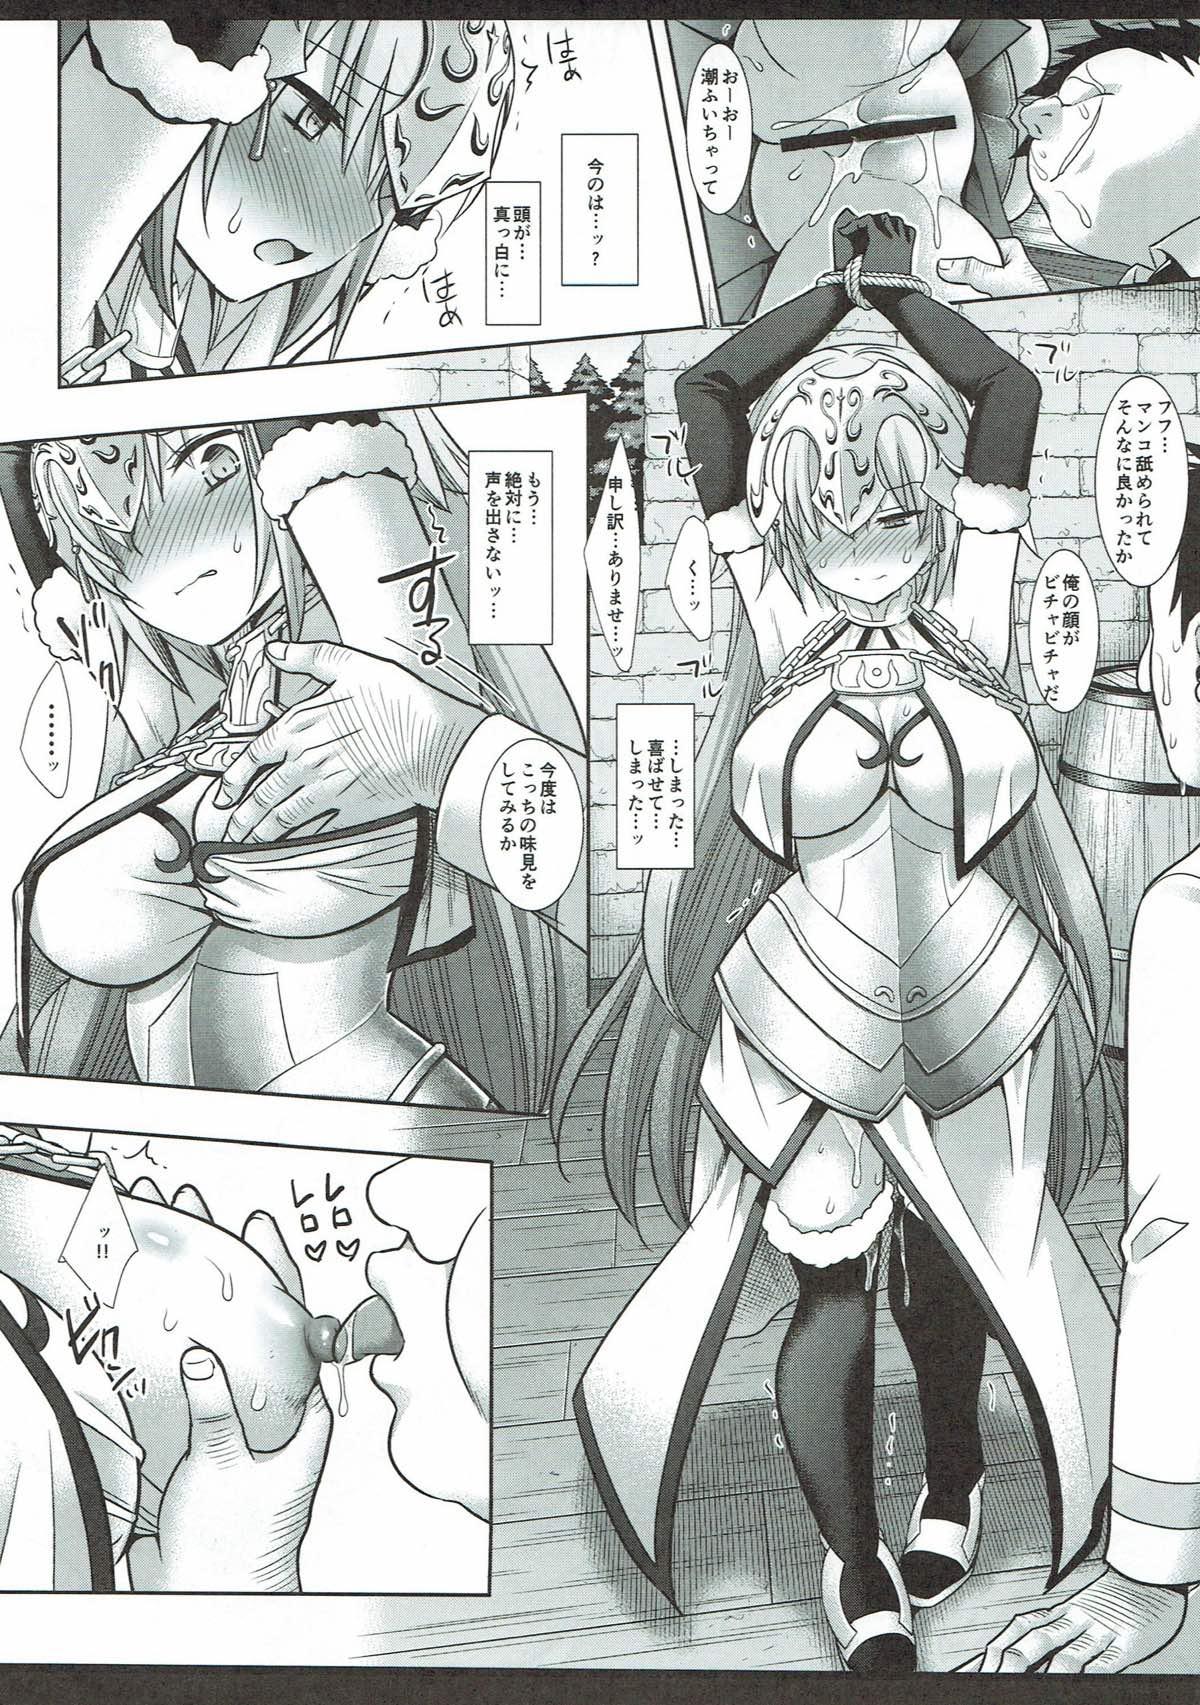 Spy Zettai ni kusshite wa ikenai Jeanne - Fate grand order Peitos - Page 9